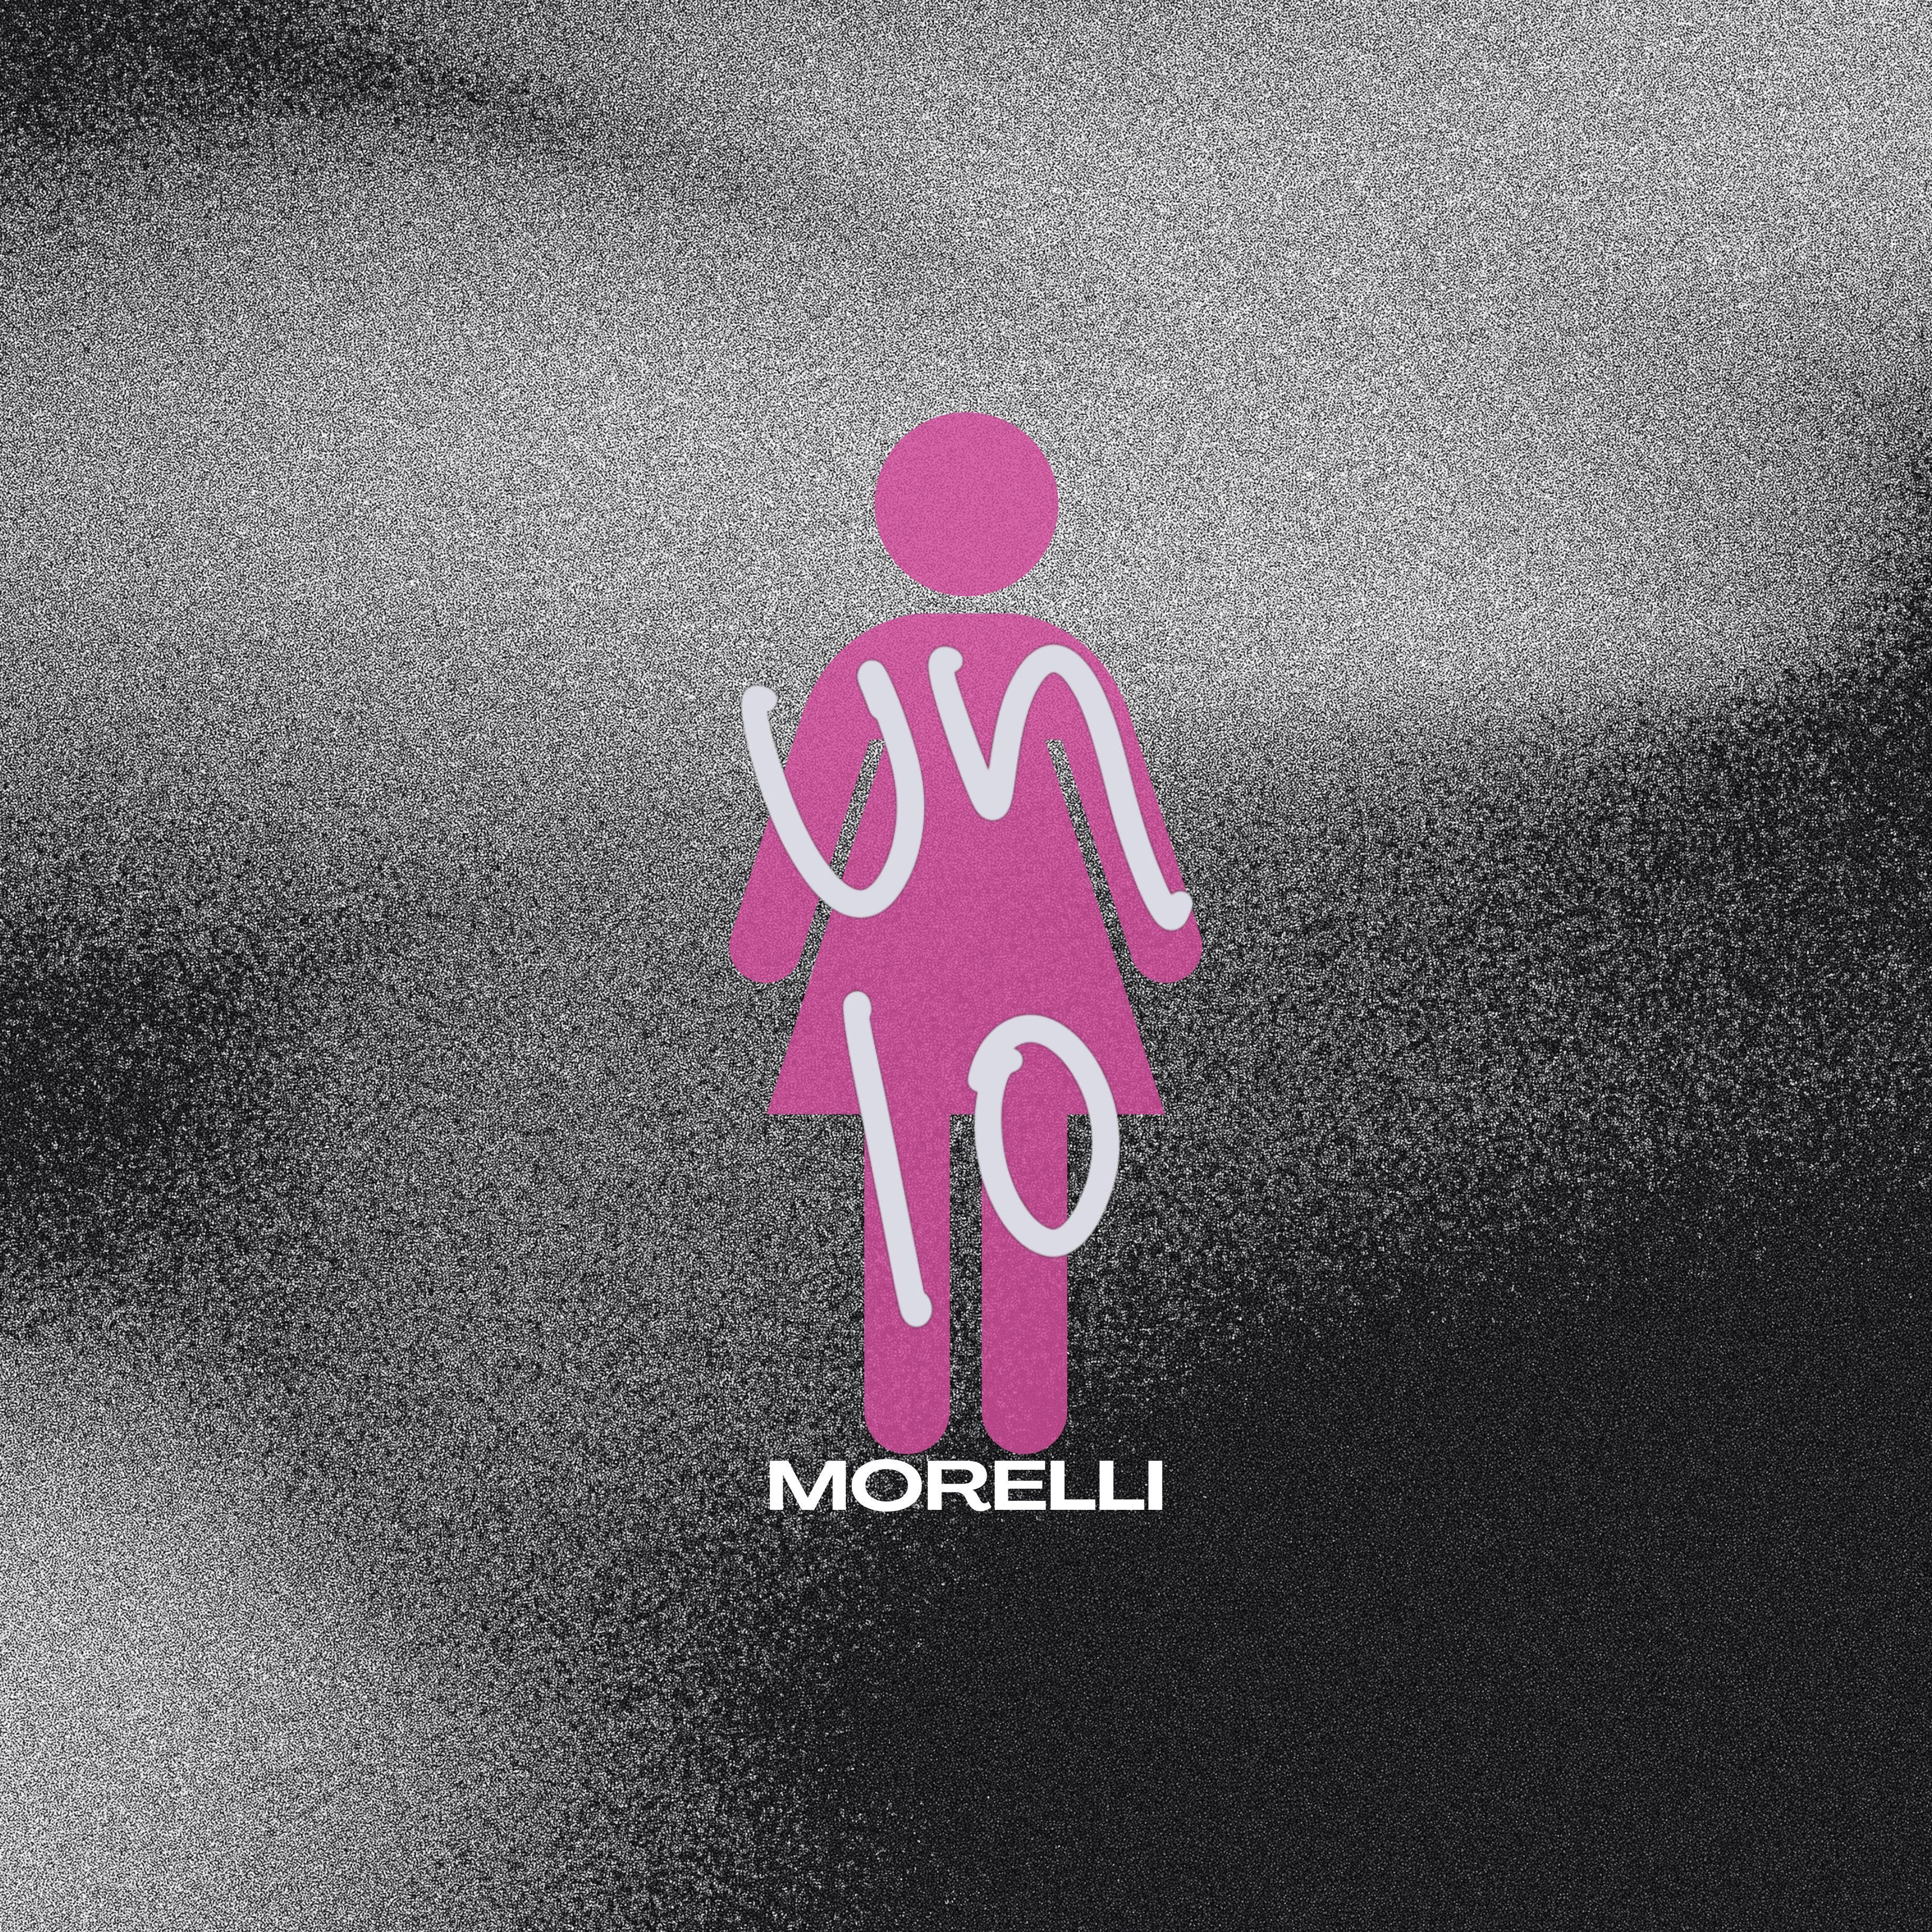 Morelli presenta su nueva canción ‘Un 10’